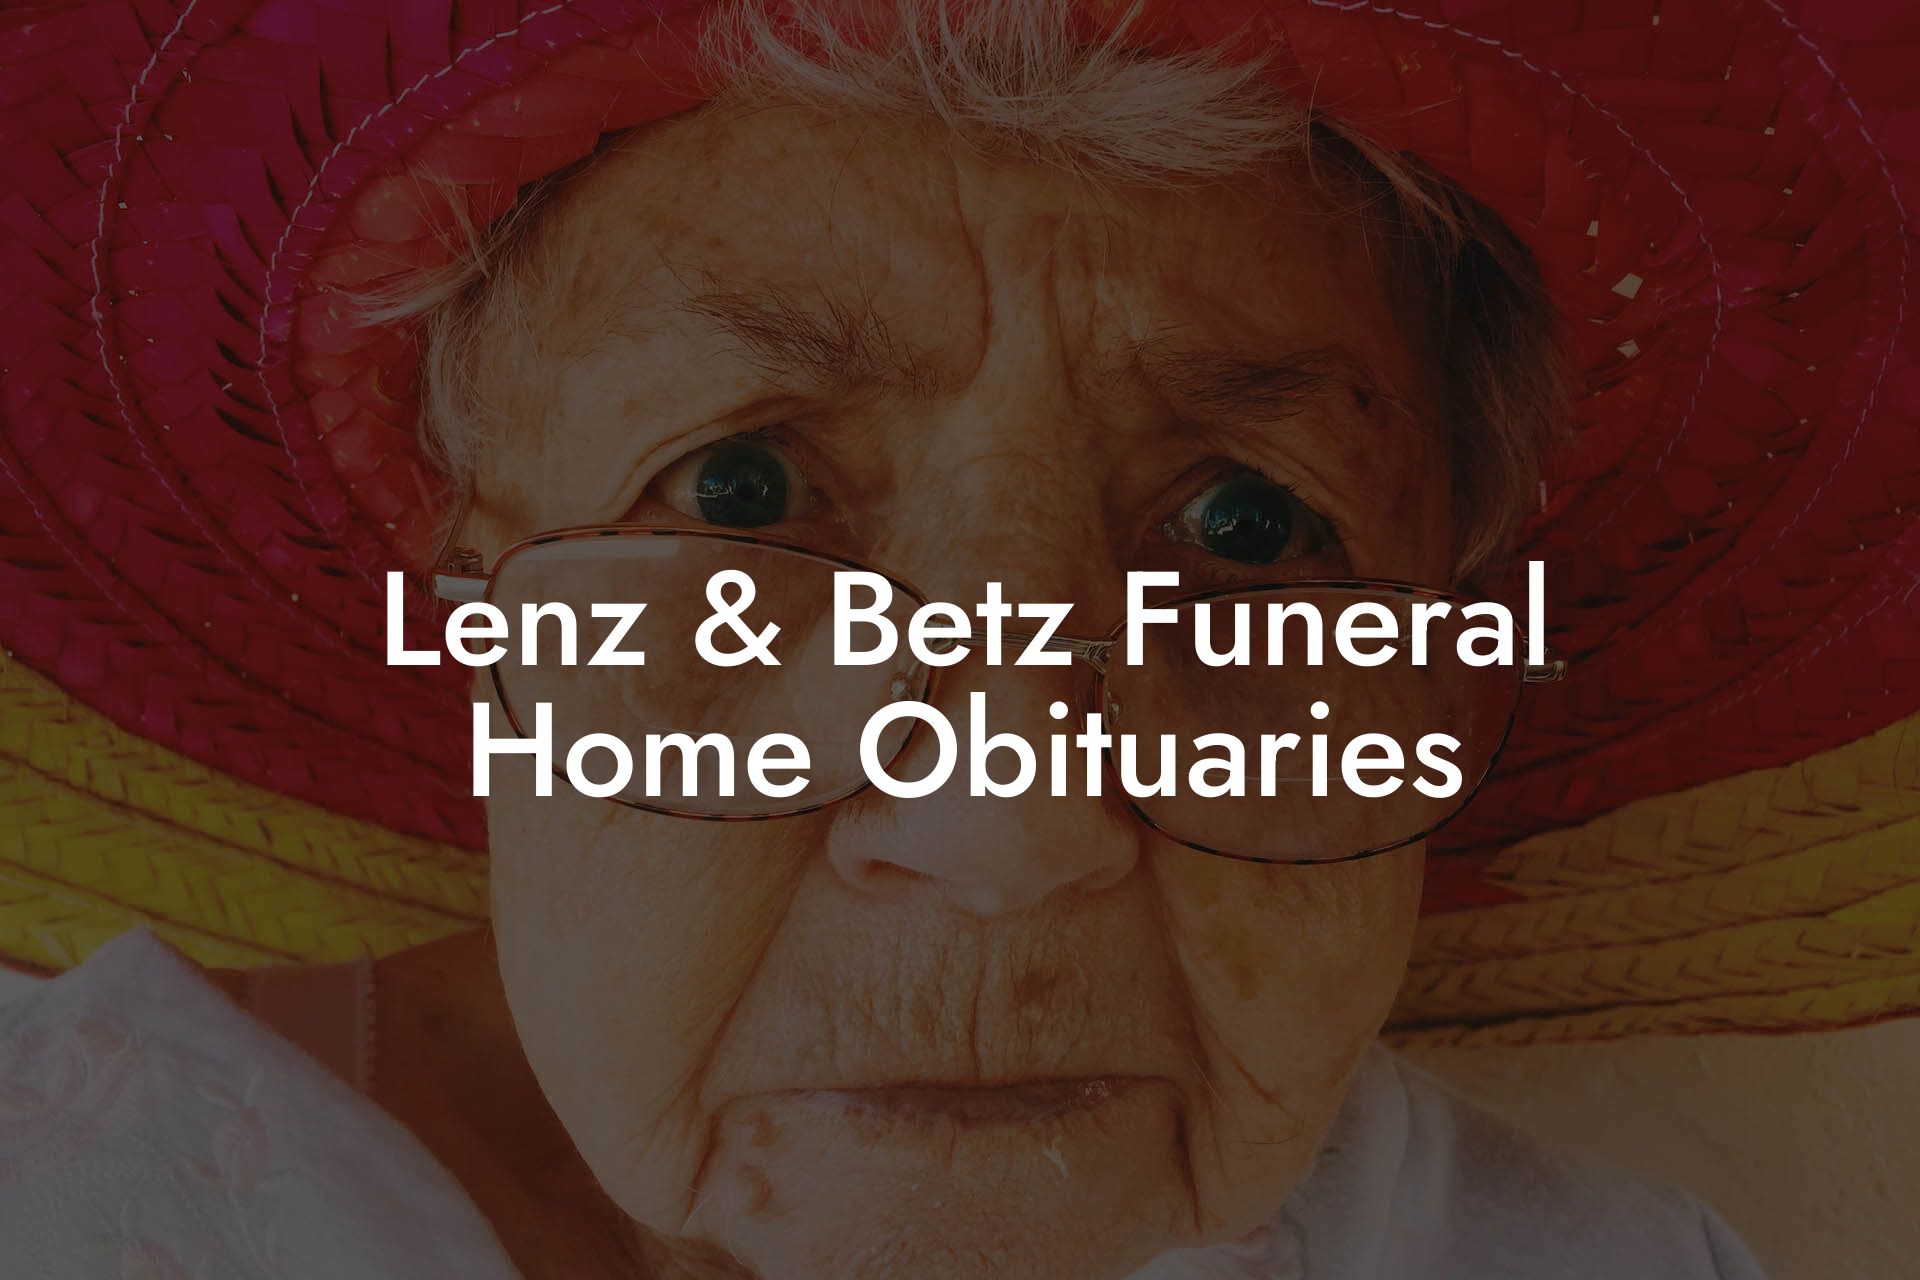 Lenz & Betz Funeral Home Obituaries